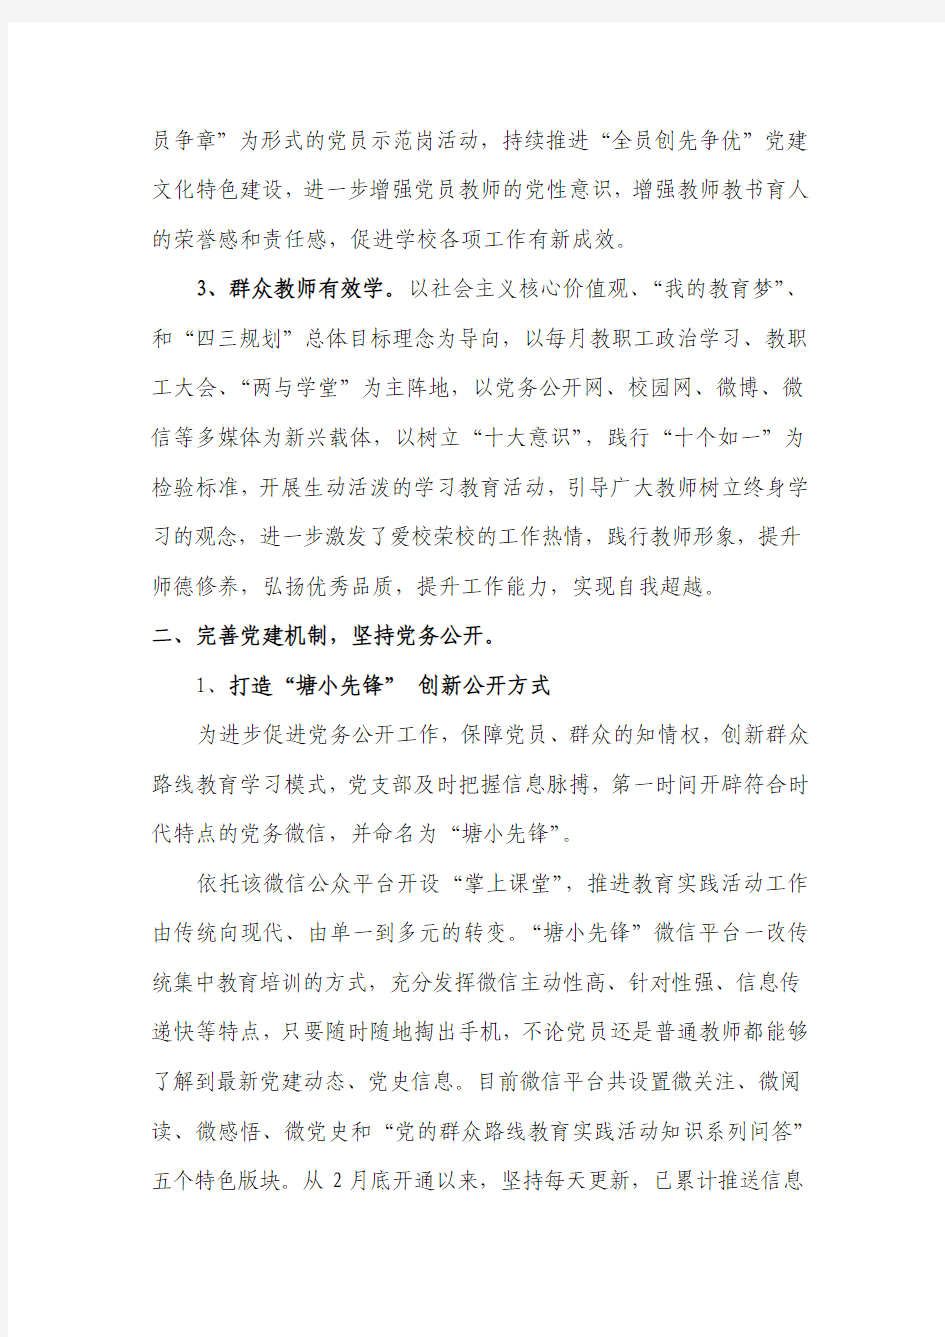 闵行区民办塘湾小学党支部2014年工作总结